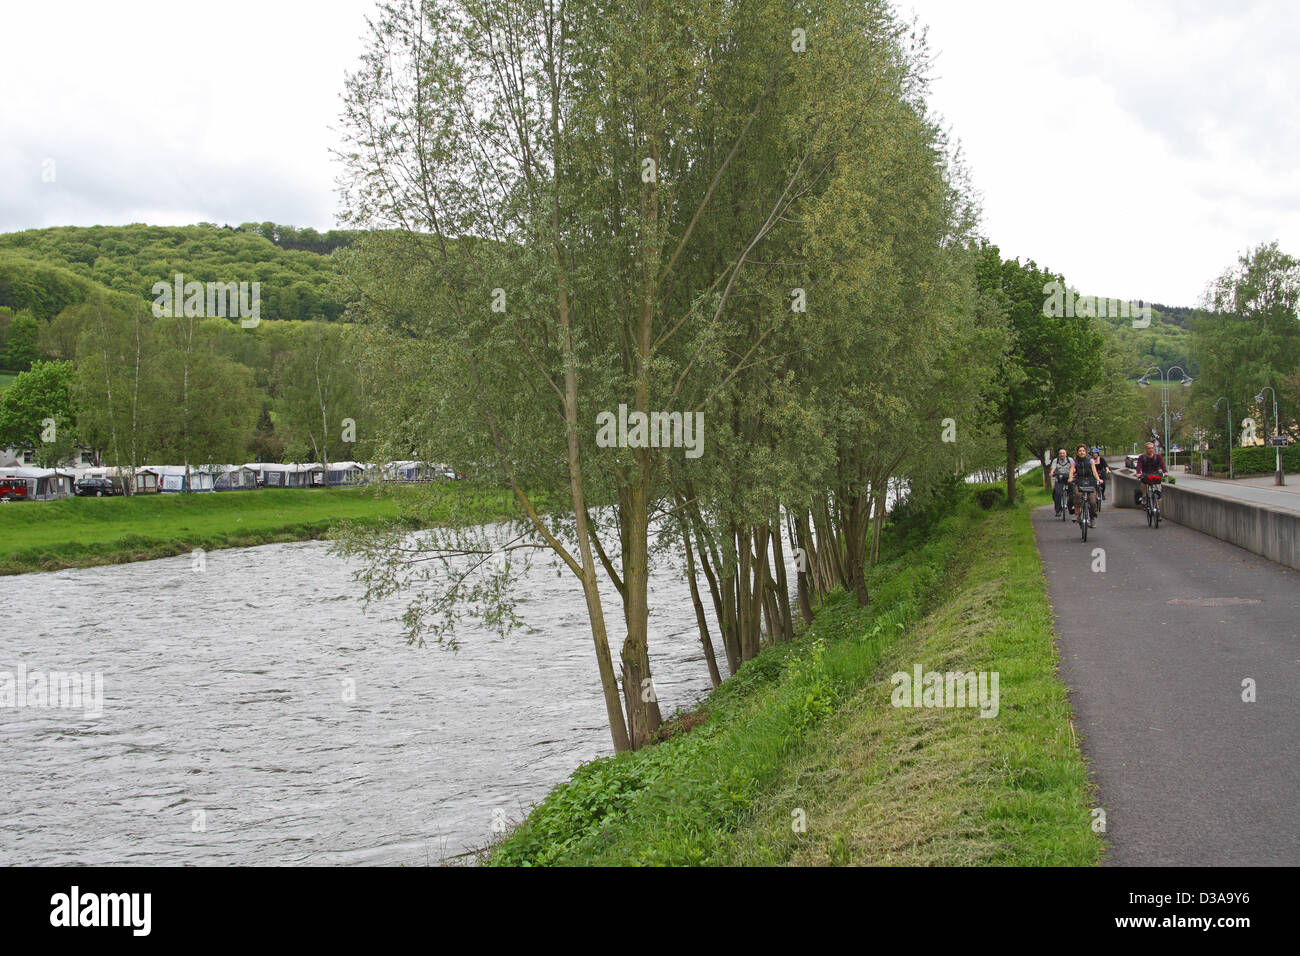 Luxembourg : Les cyclistes par la Sûre, près de Diekirch/Ettelbruck Banque D'Images